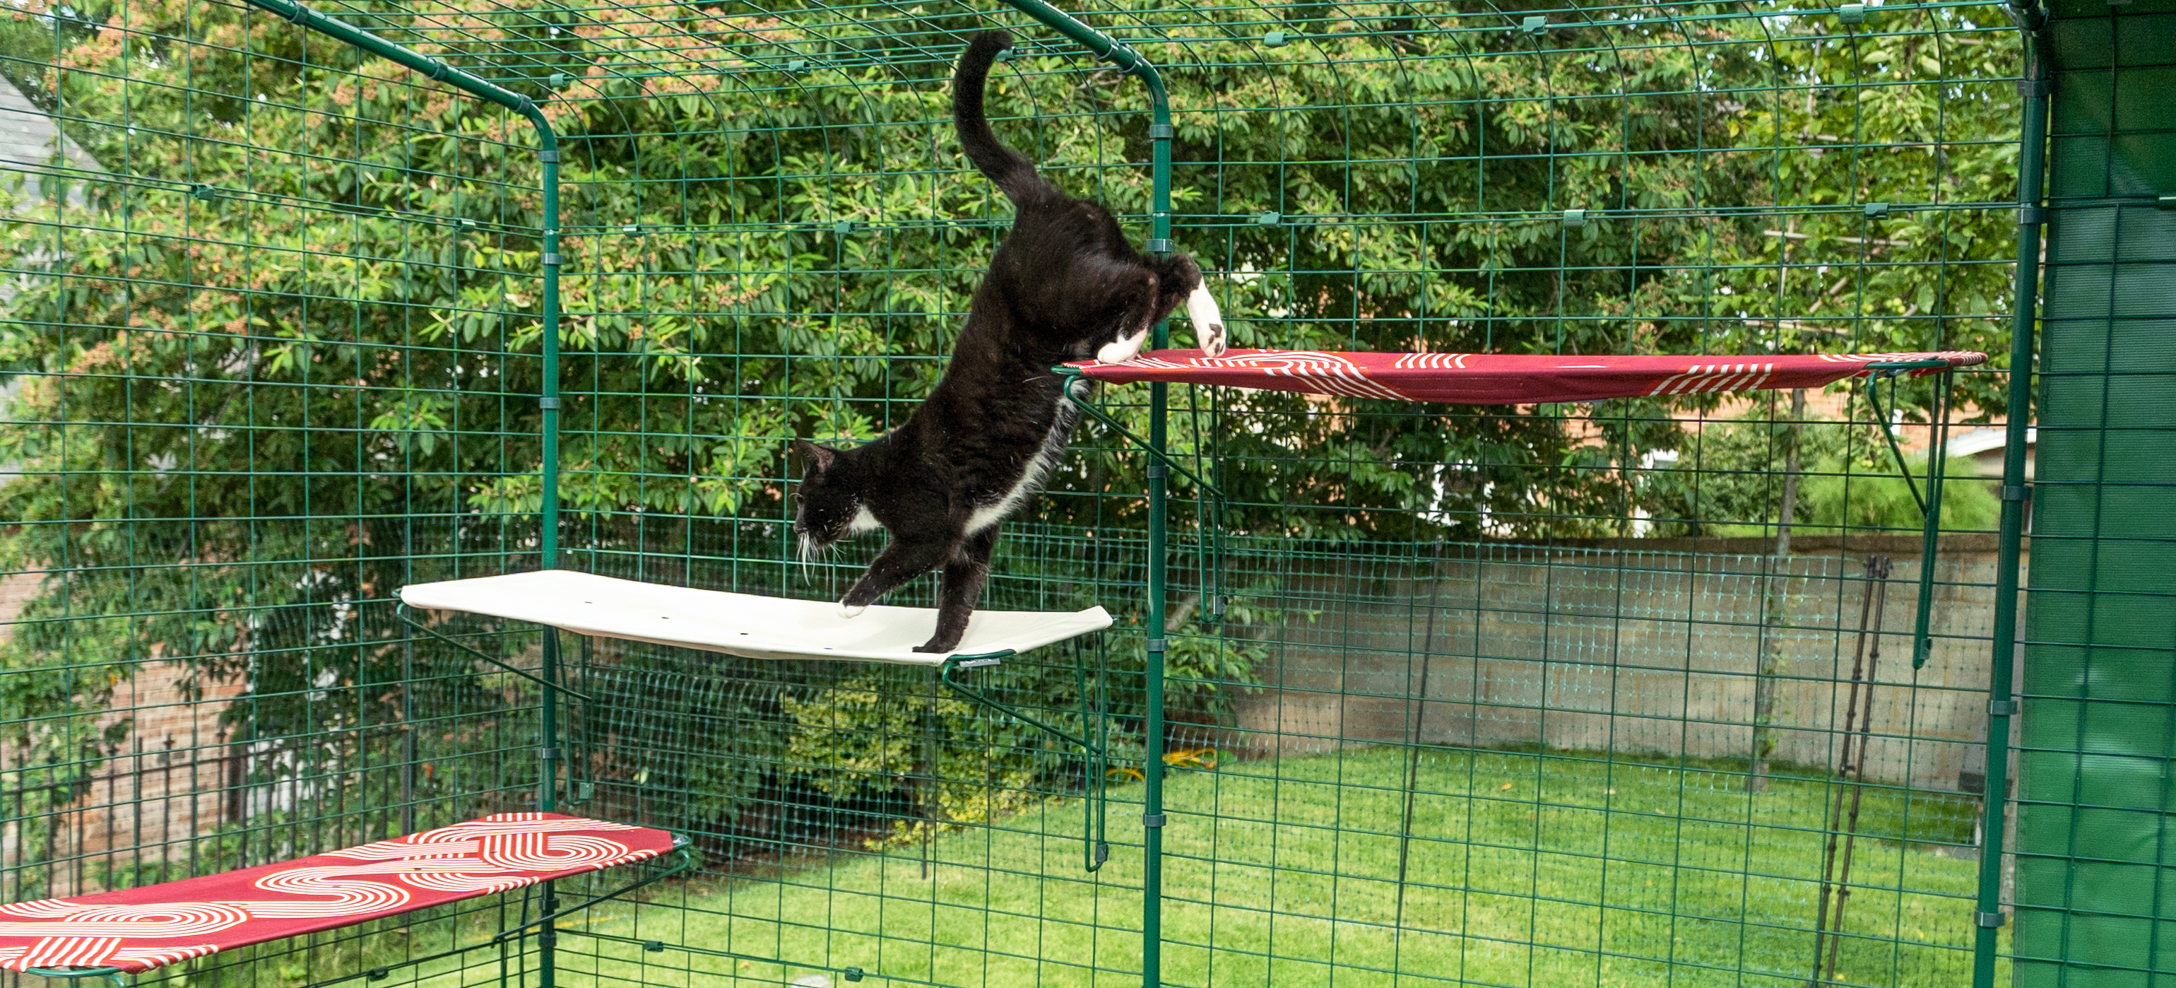 Kat, der klatrer på udendørs  Omlet stofkattehylder i en udendørs kattegård i haven